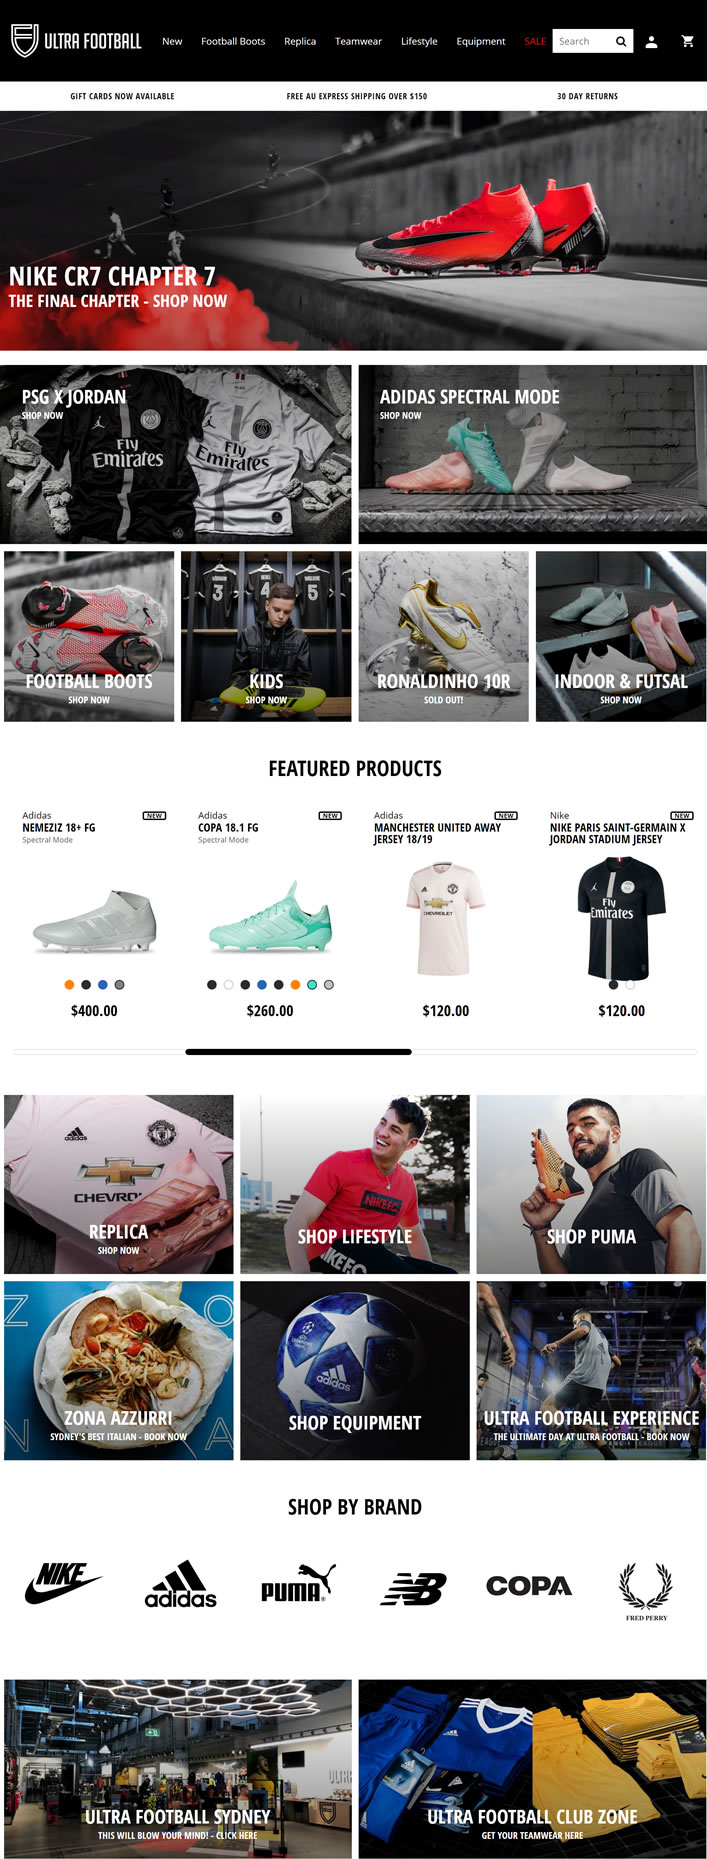 澳大利亚足球鞋和服装购物网站：Ultra Football